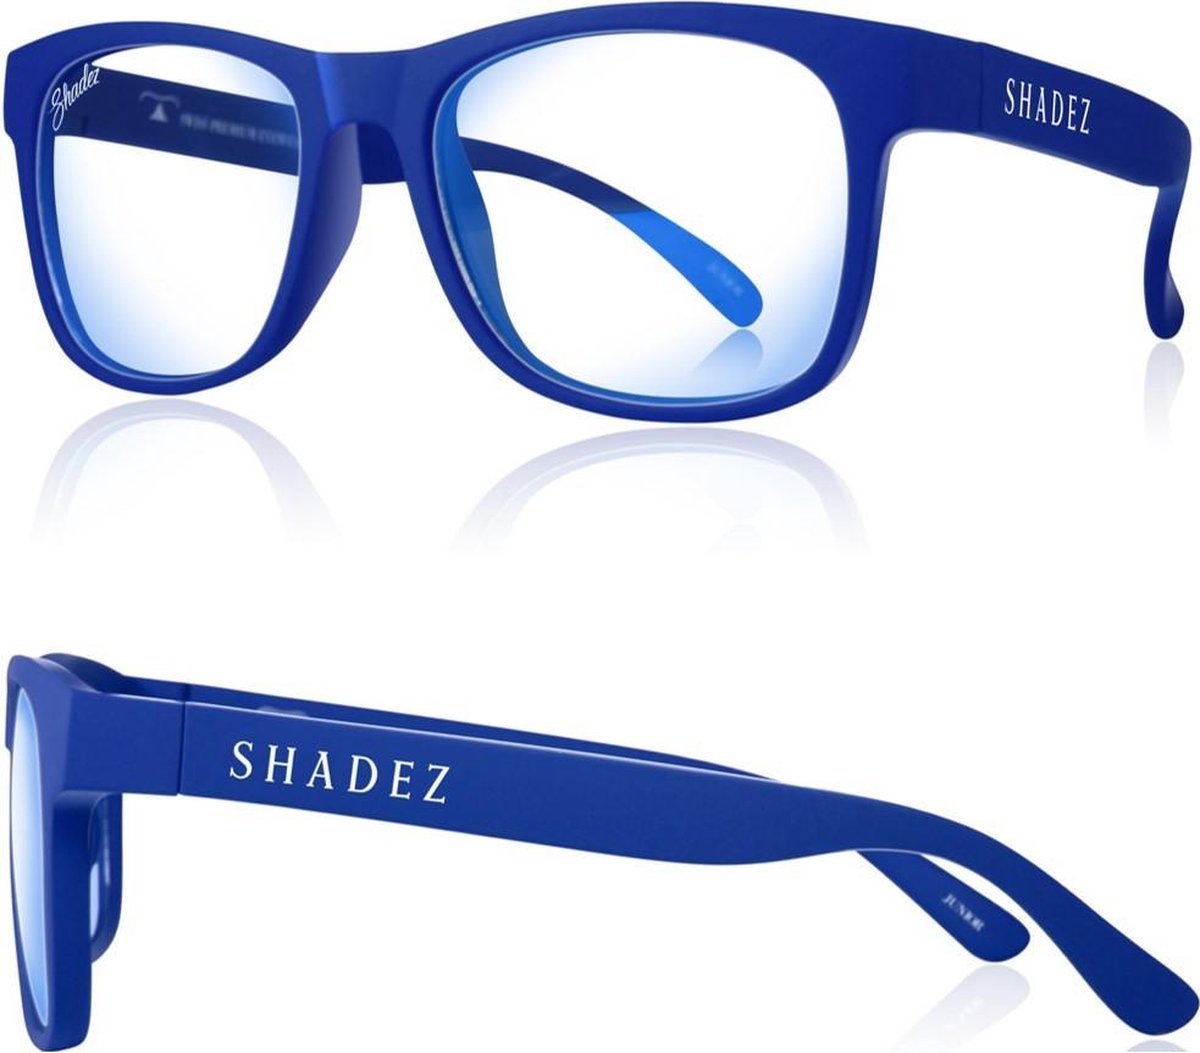 Beeldschermbril kind - Gamebril - Computerbril - Shadez - Blauw 3-7 jr